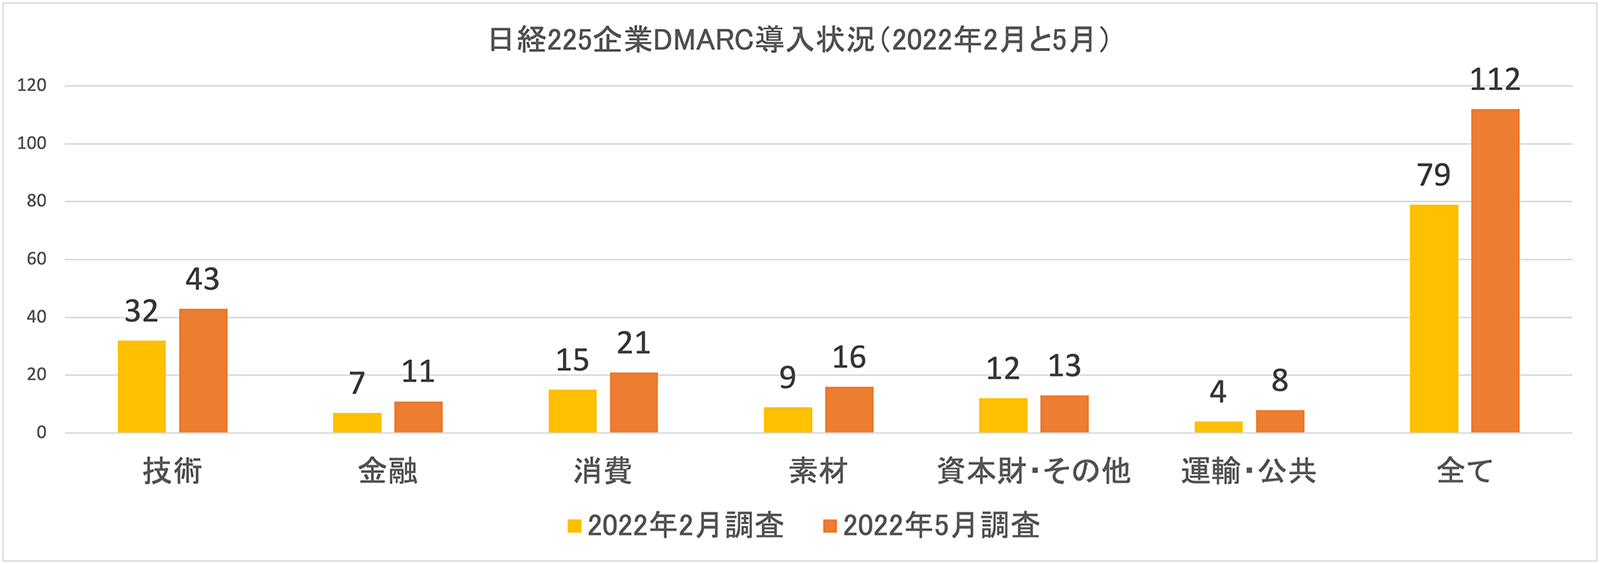 図3. 2022年2月・5月における日経225企業DMARC導入状況（n=225）